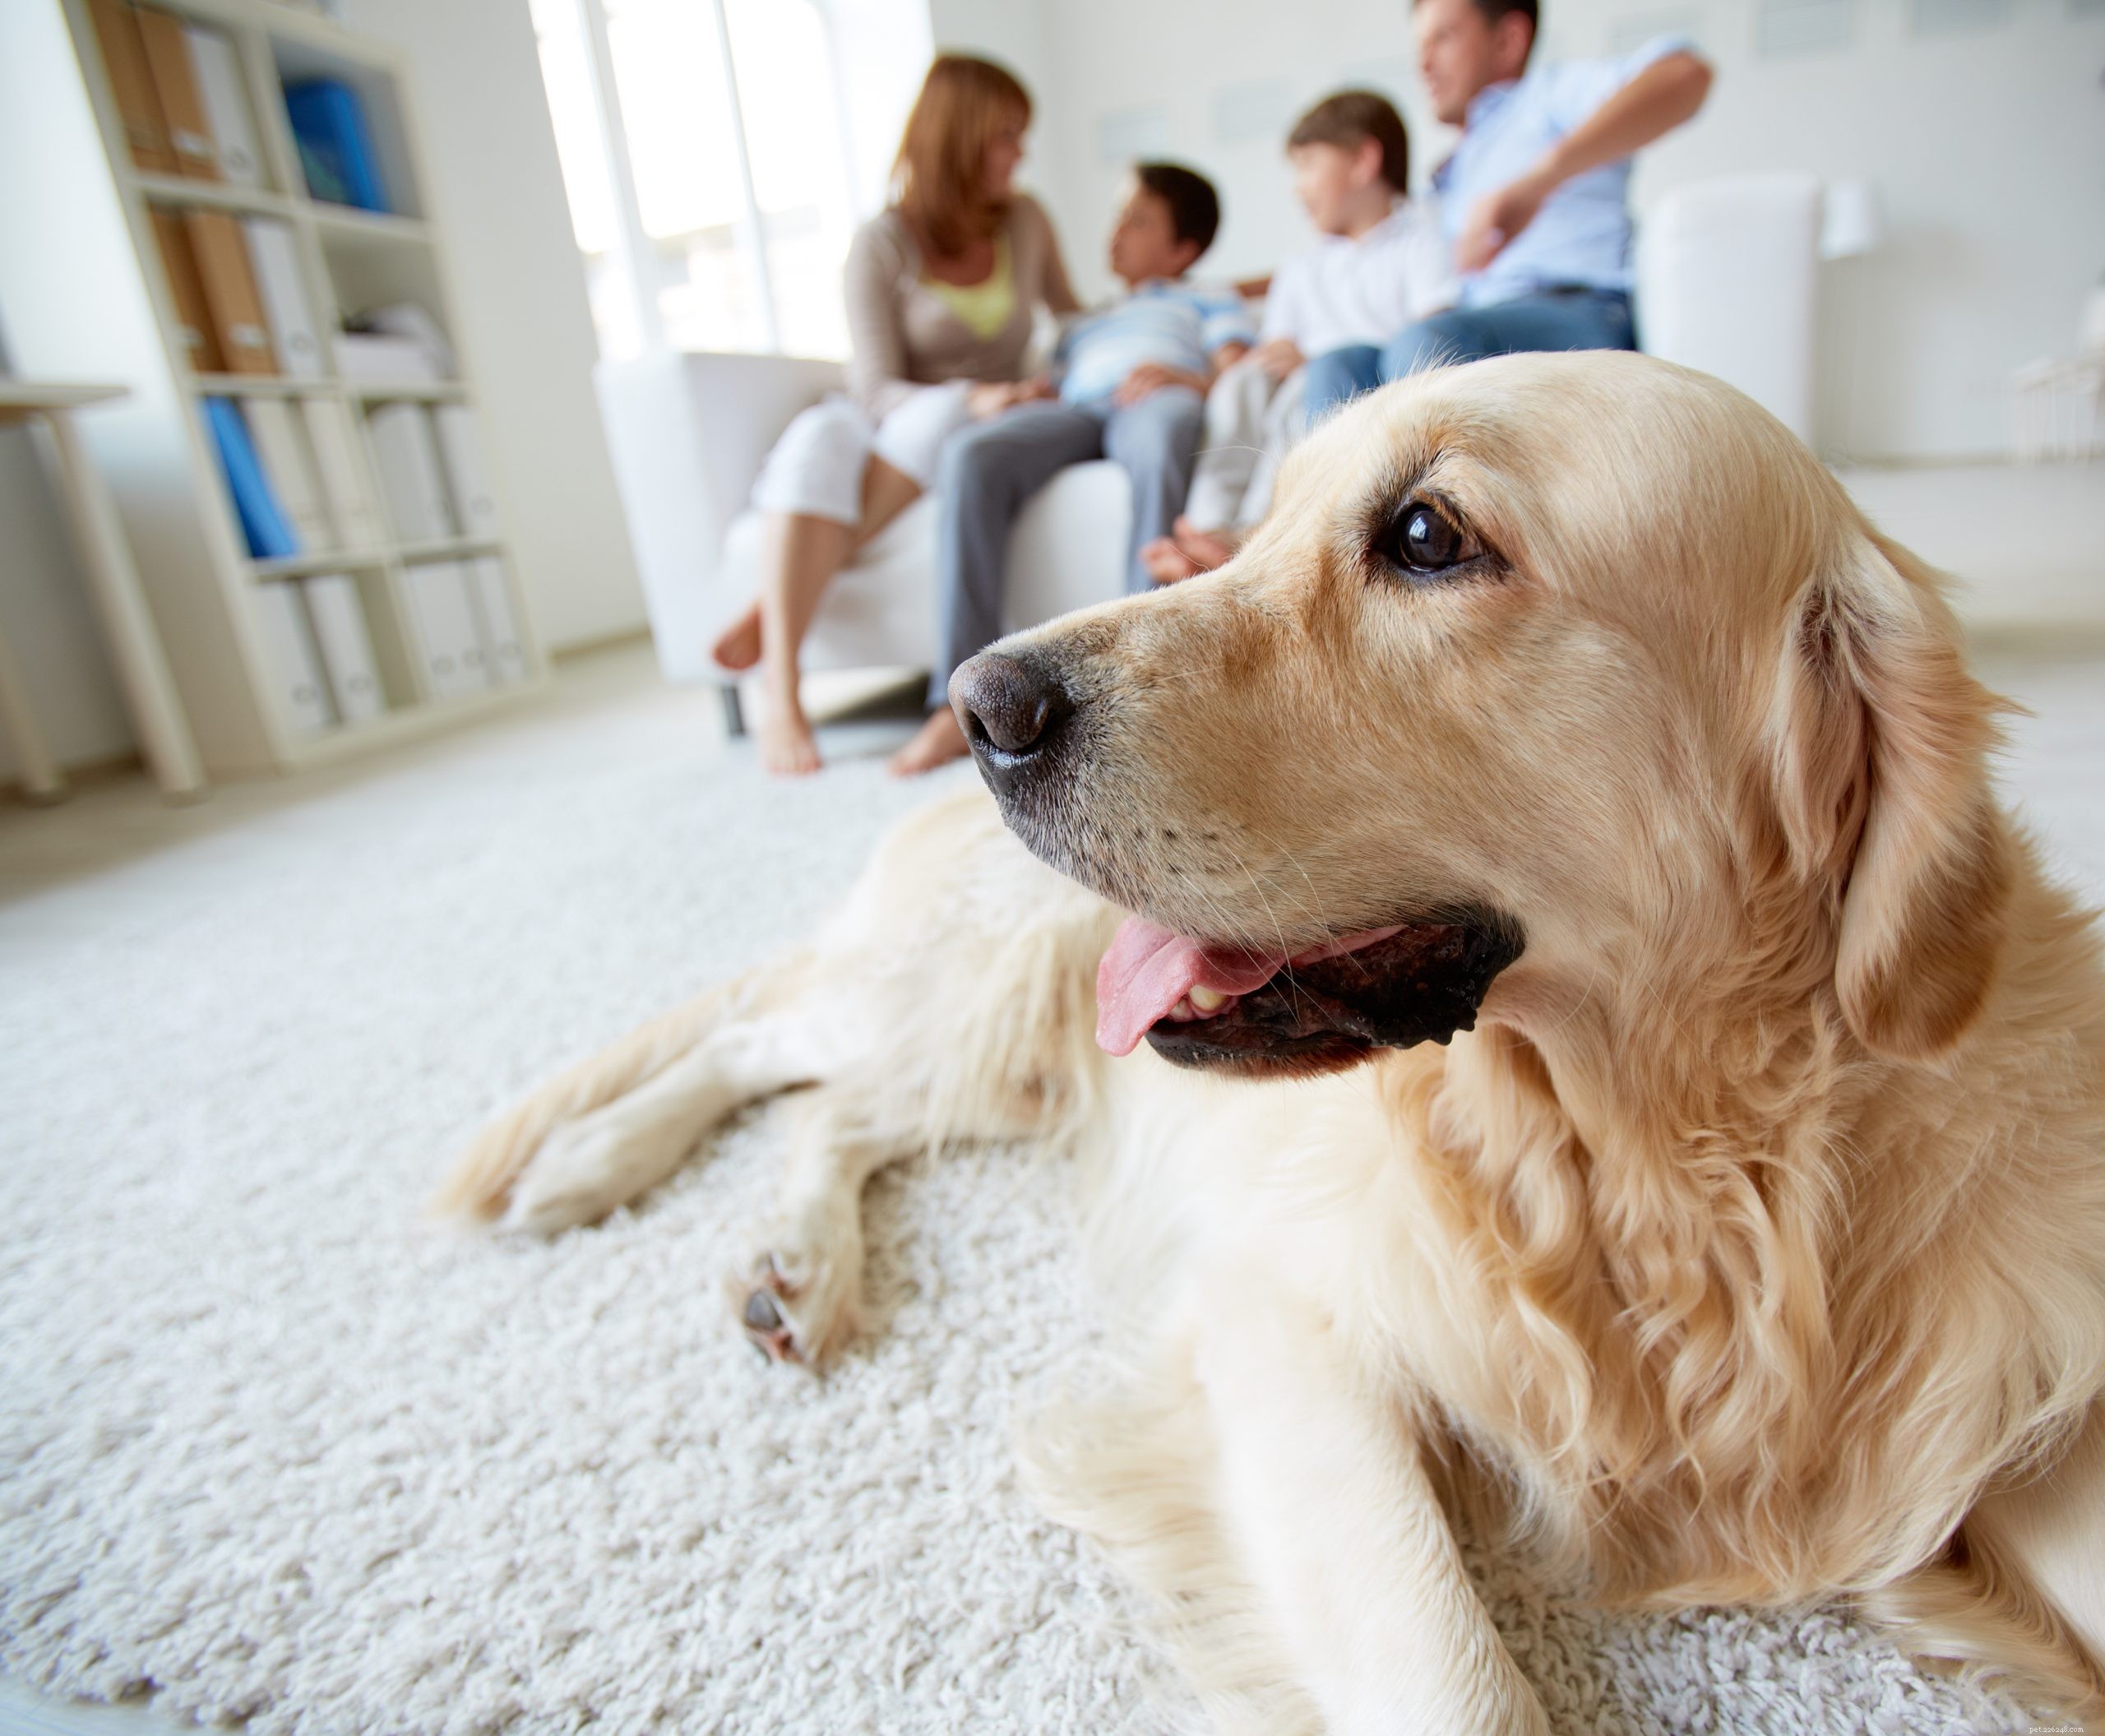 Comment garder votre chien heureux et en bonne santé pendant le confinement lié au coronavirus